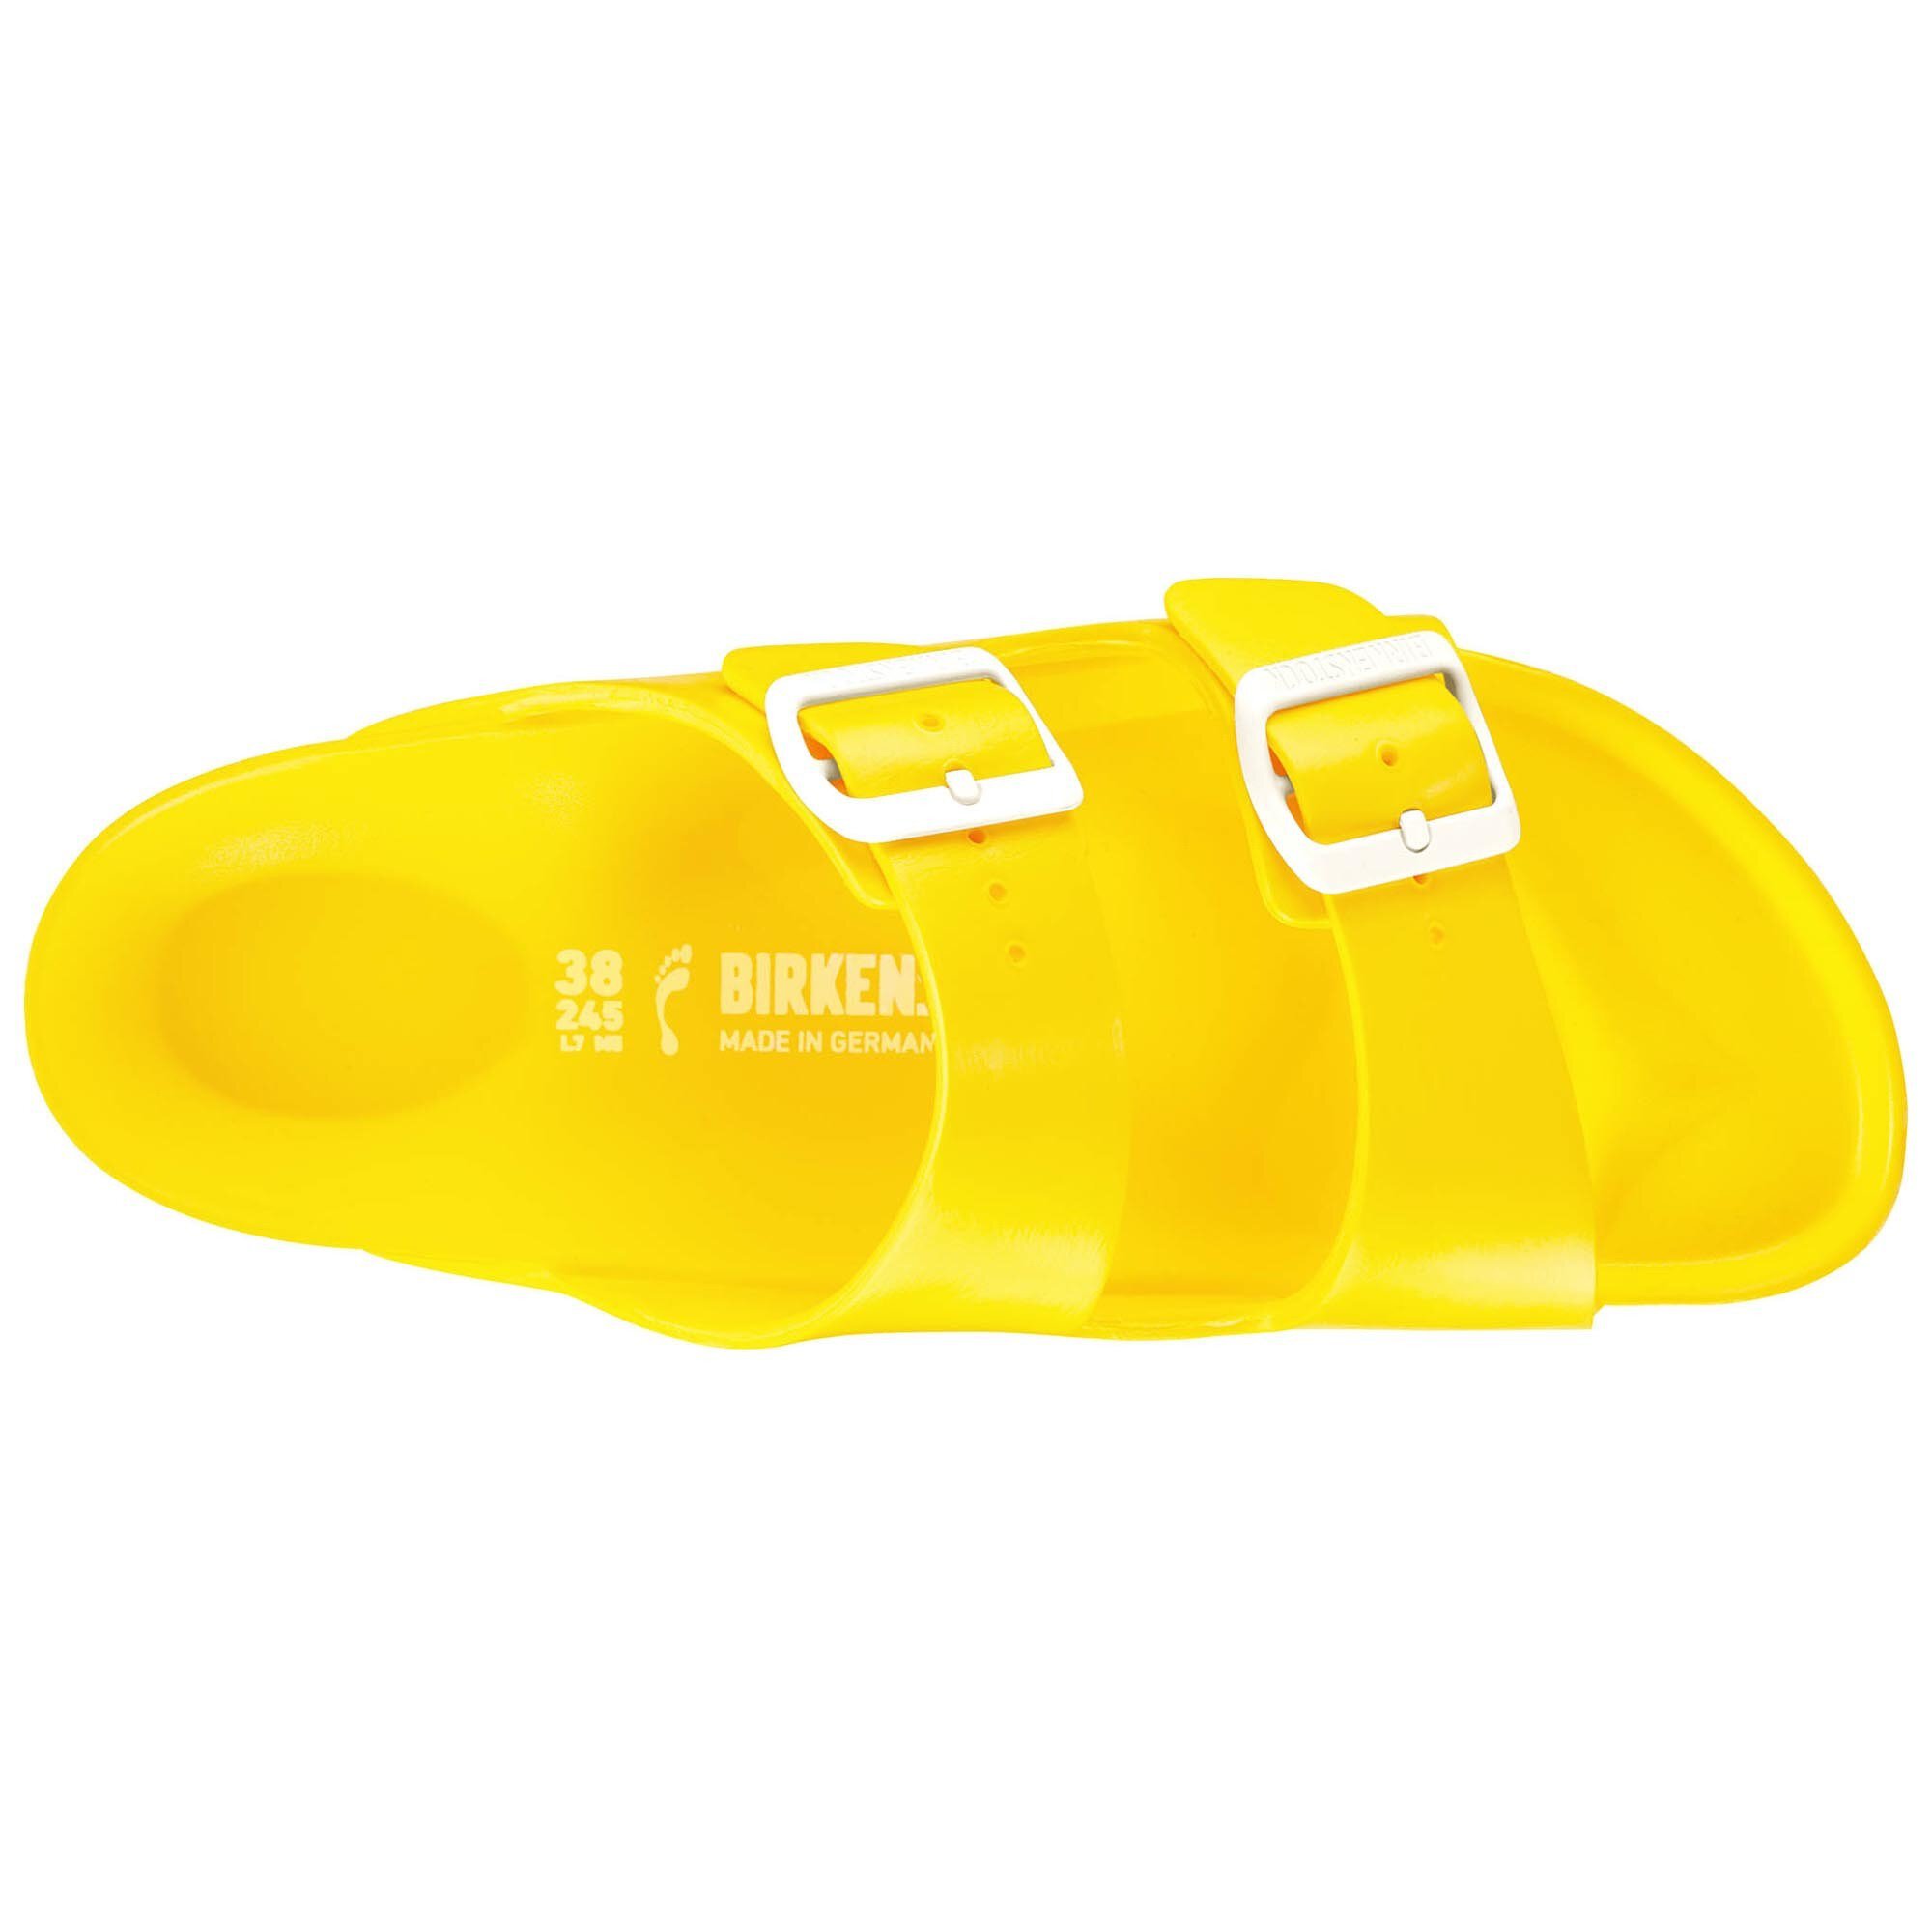 birkenstock arizona essentials yellow